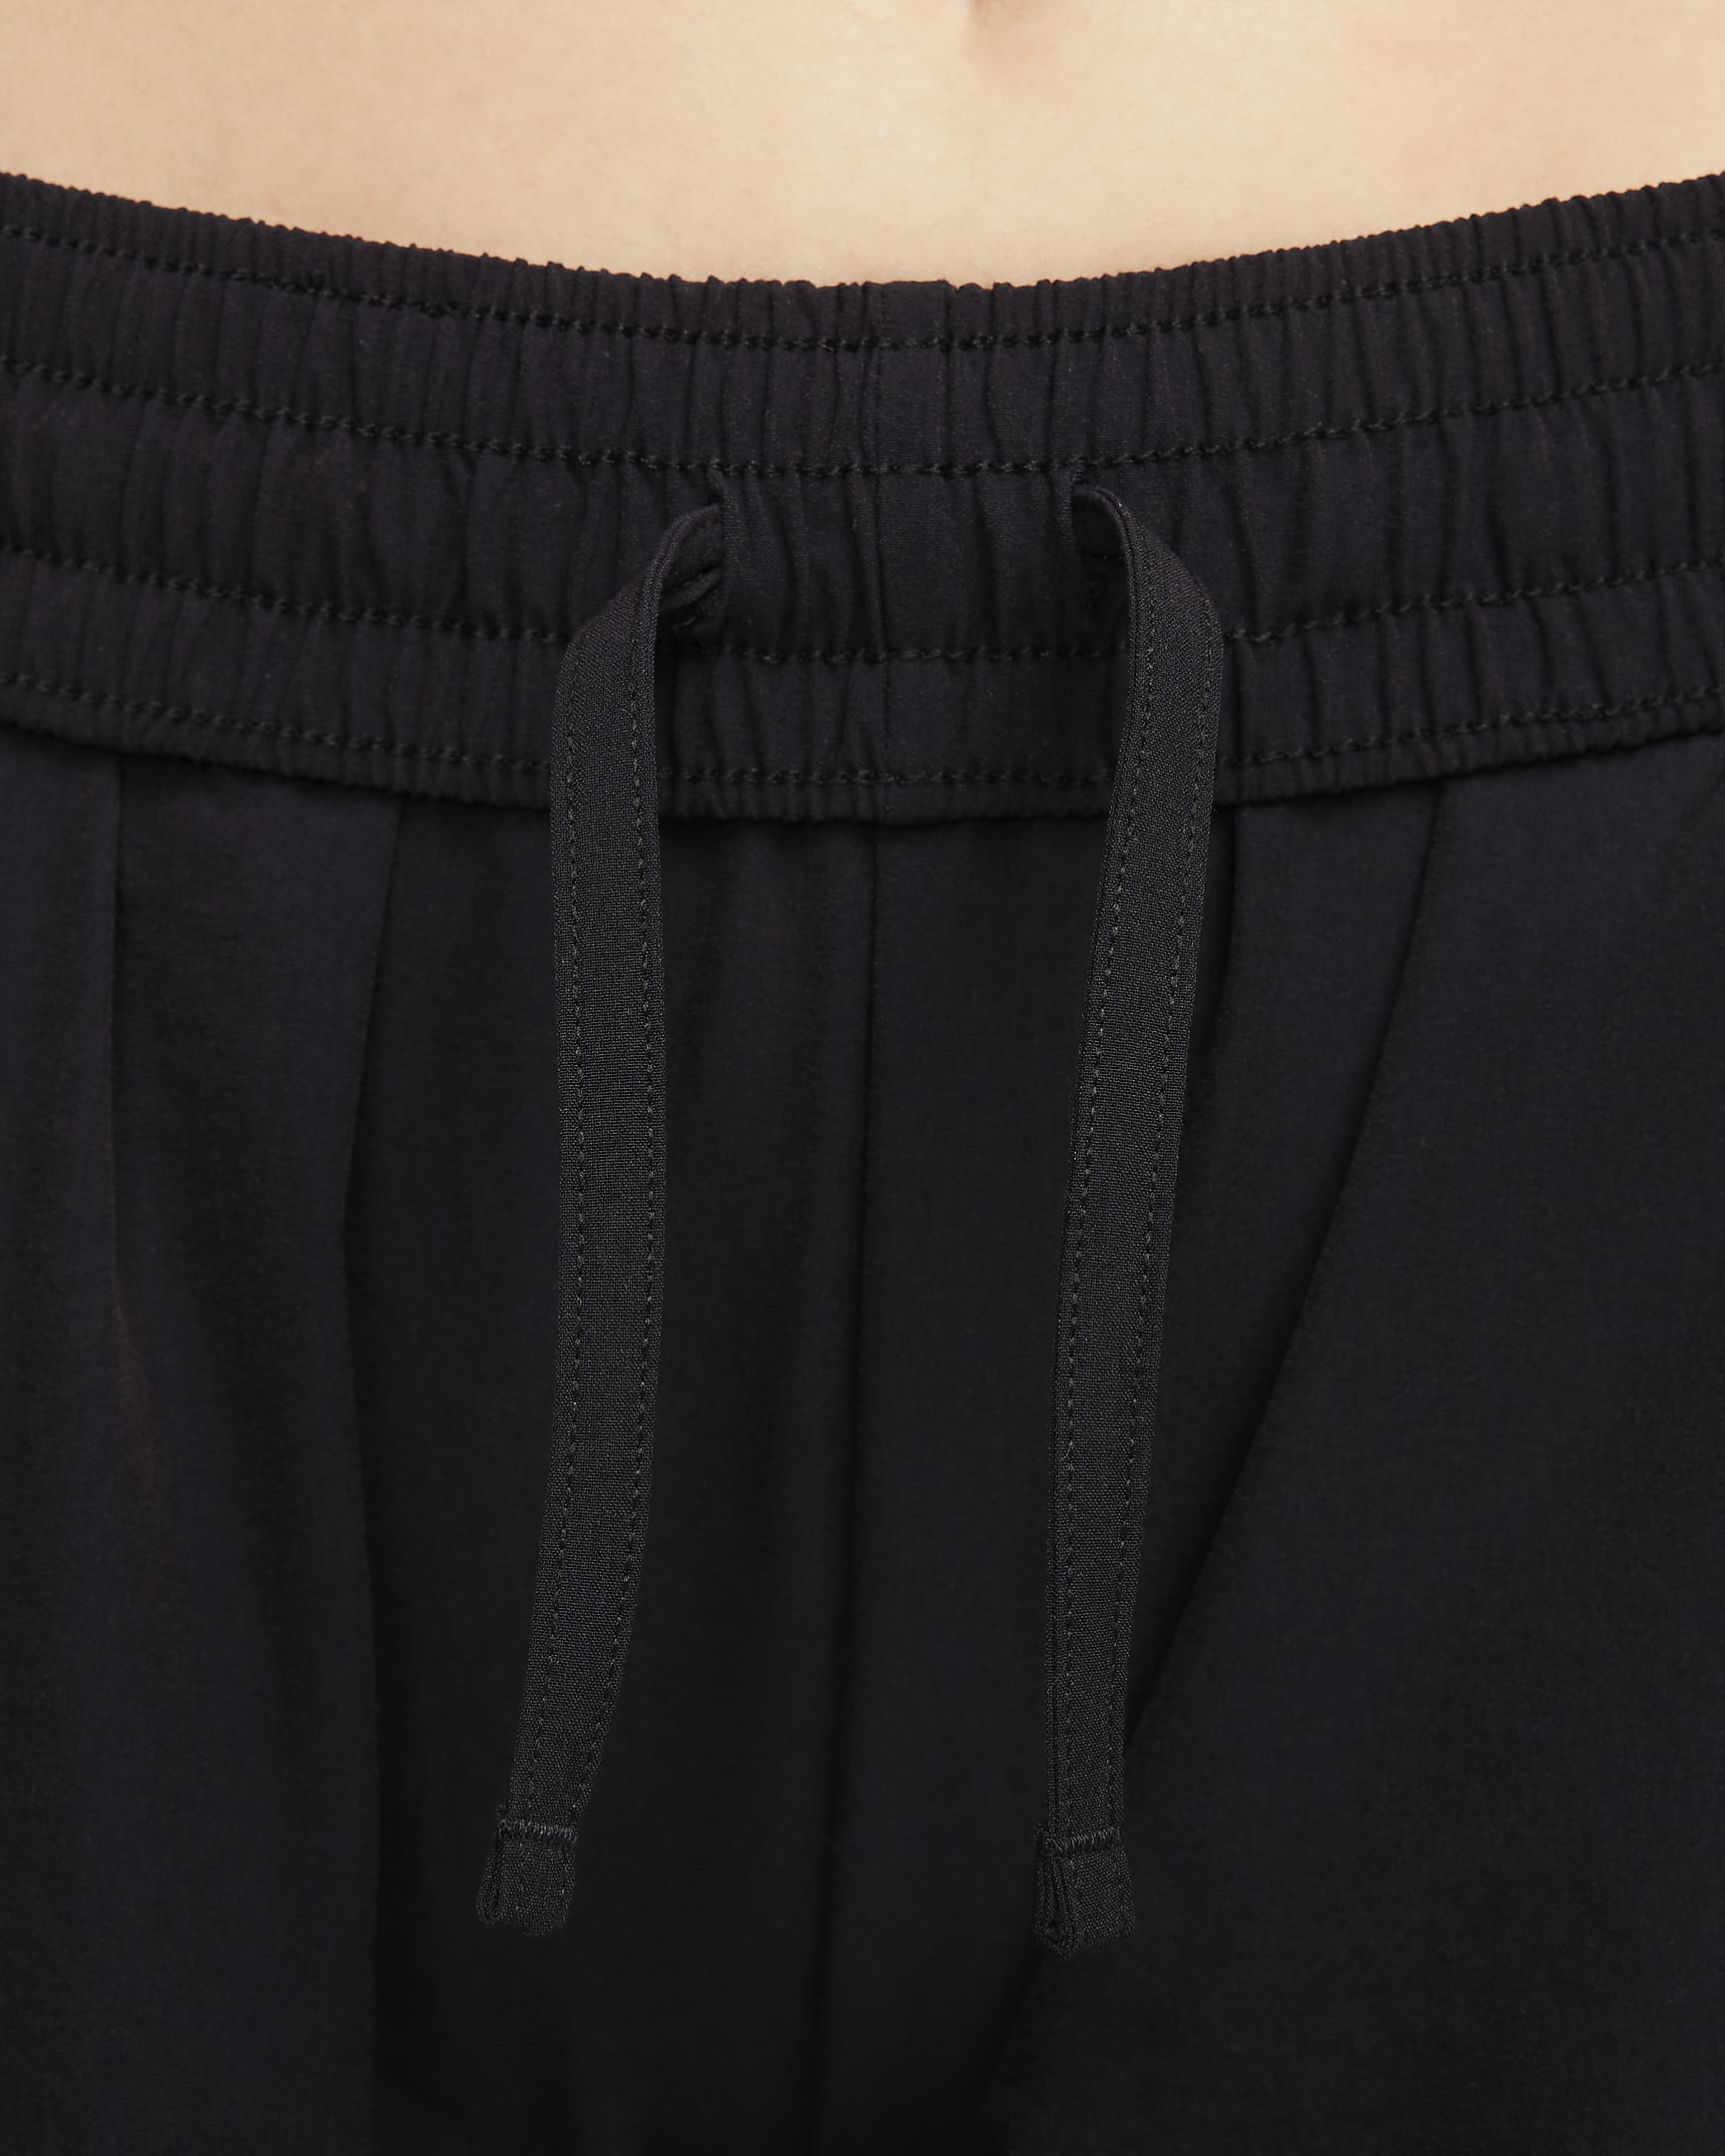 Nike Sportswear Women's Woven Cargo Trousers. Nike UK